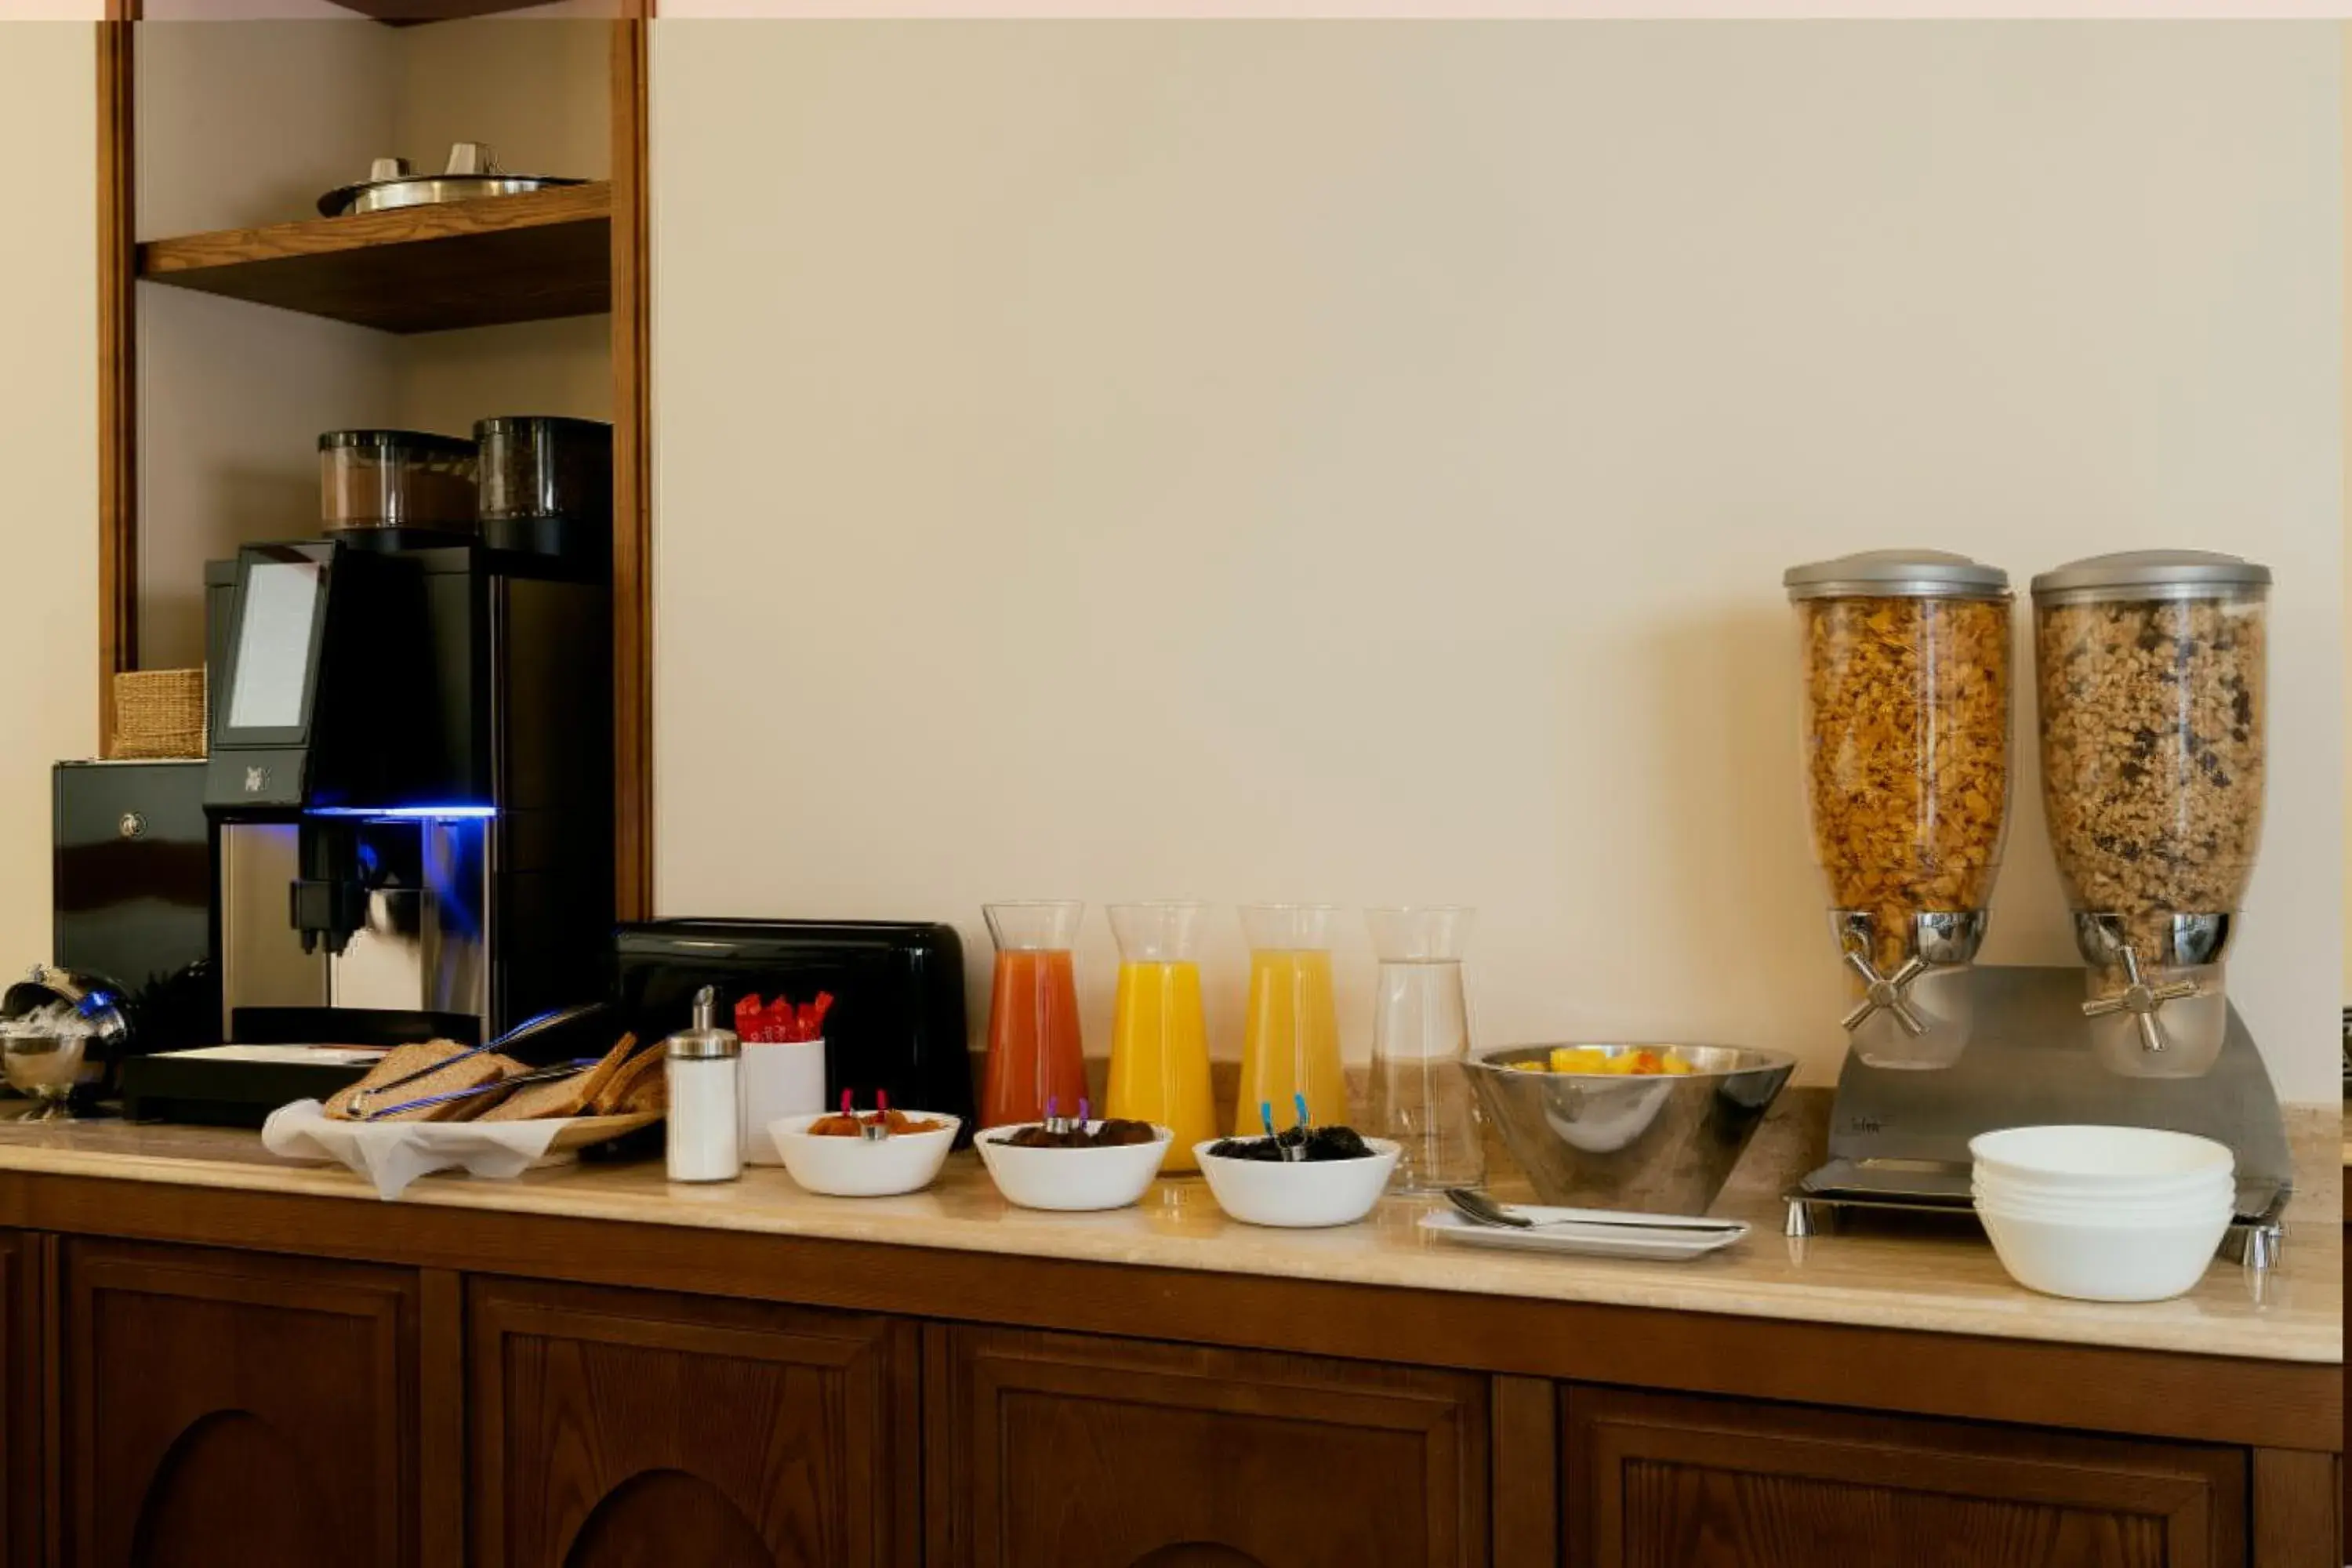 Buffet breakfast in Hotel Michelet Odeon